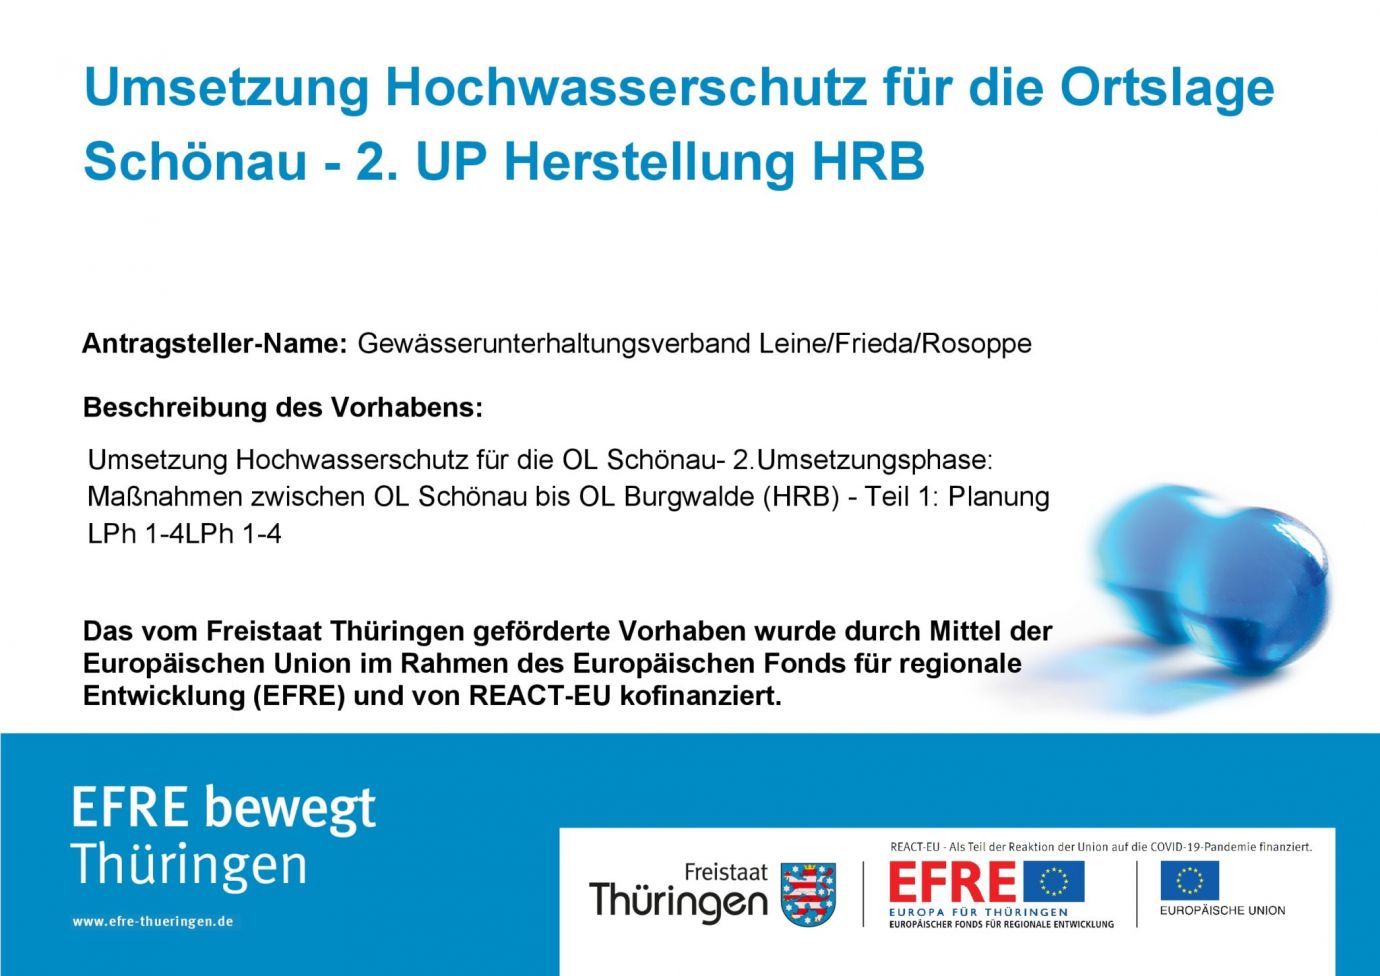 Bildtitel: Umsetzung Hochwasserschutz für die Ortslage Schönau - 2. UP Herstellung HRB